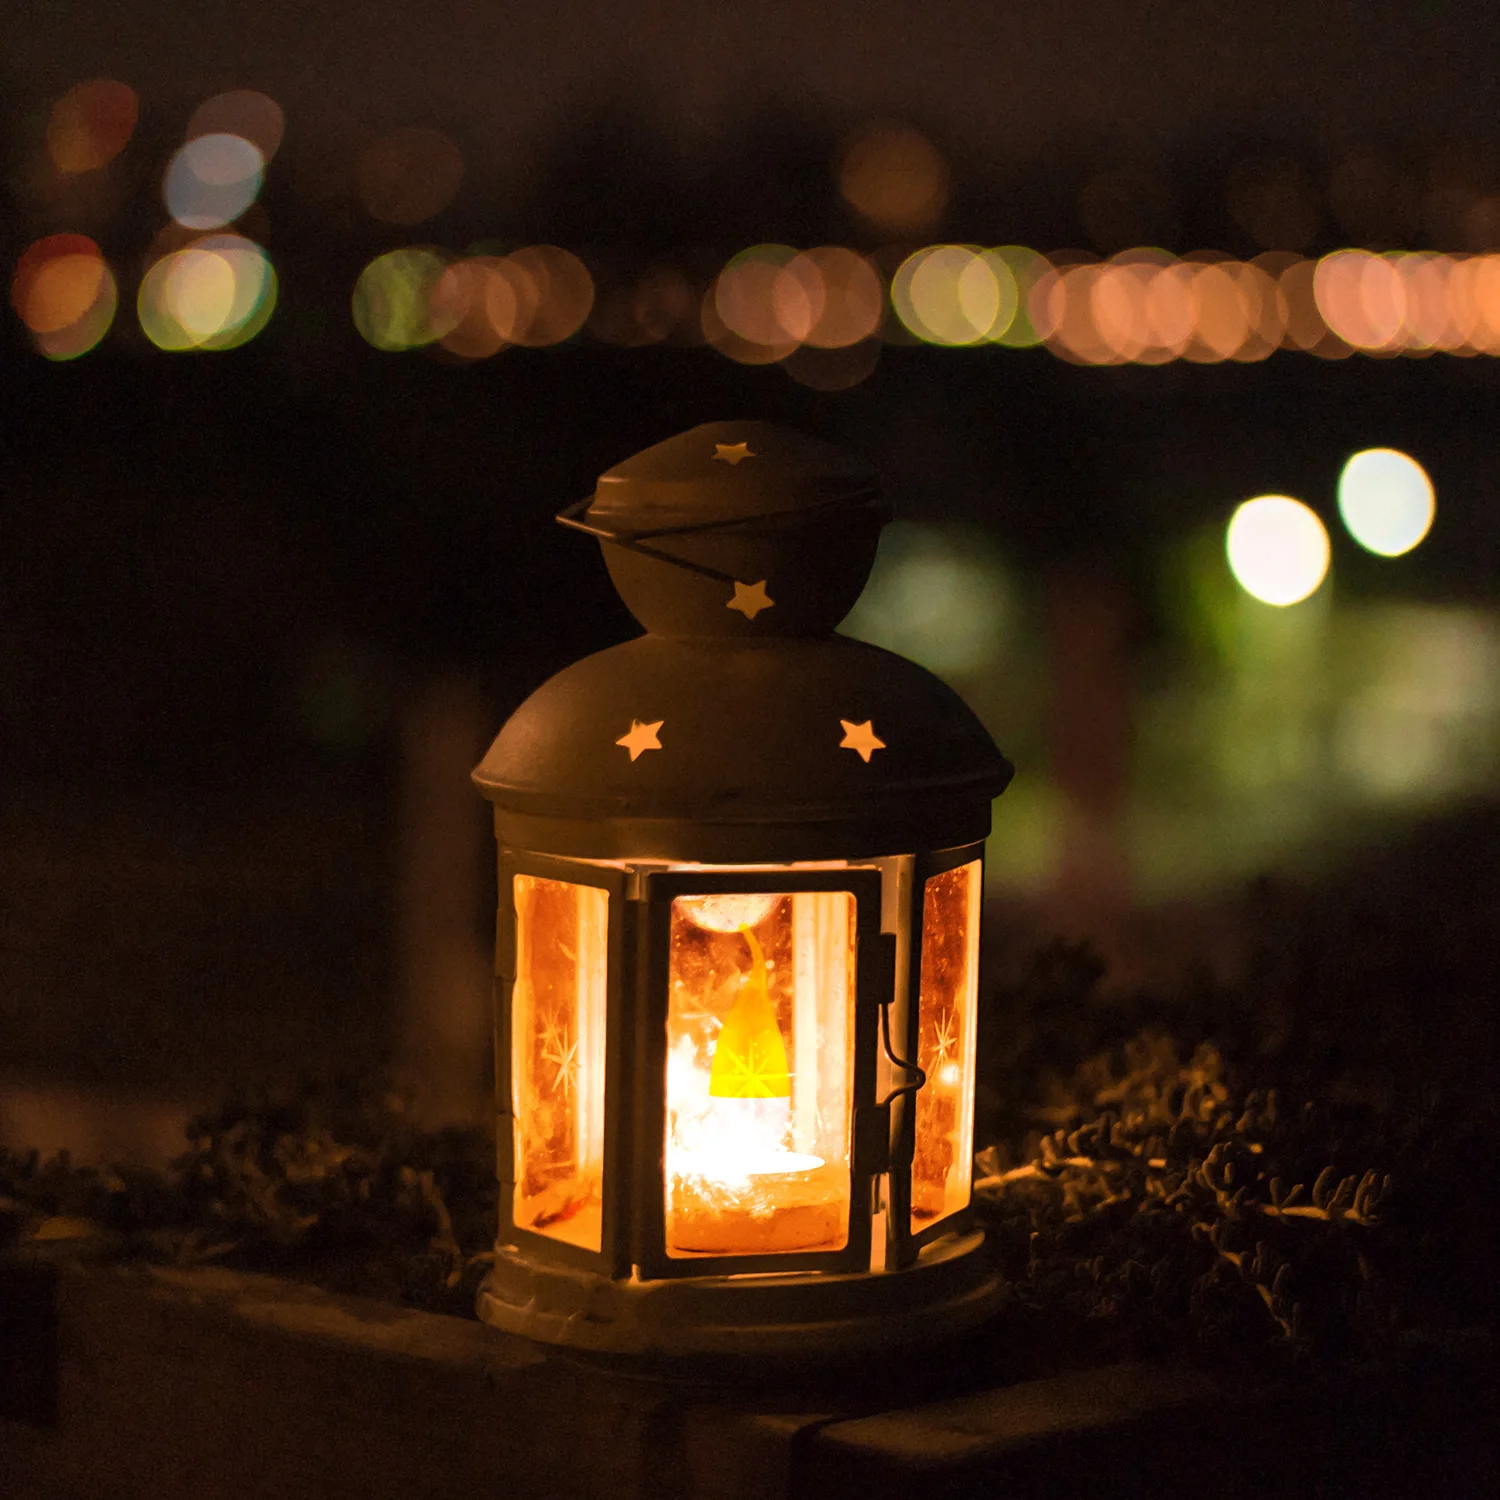 E12 4 Вт Светодиодная лампа с пламенем, лампочка с огненным хвостом/наконечником в стиле ретро, AC85-265V, Мерцающая лампа, 3 режима для Хэллоуина, Рождества